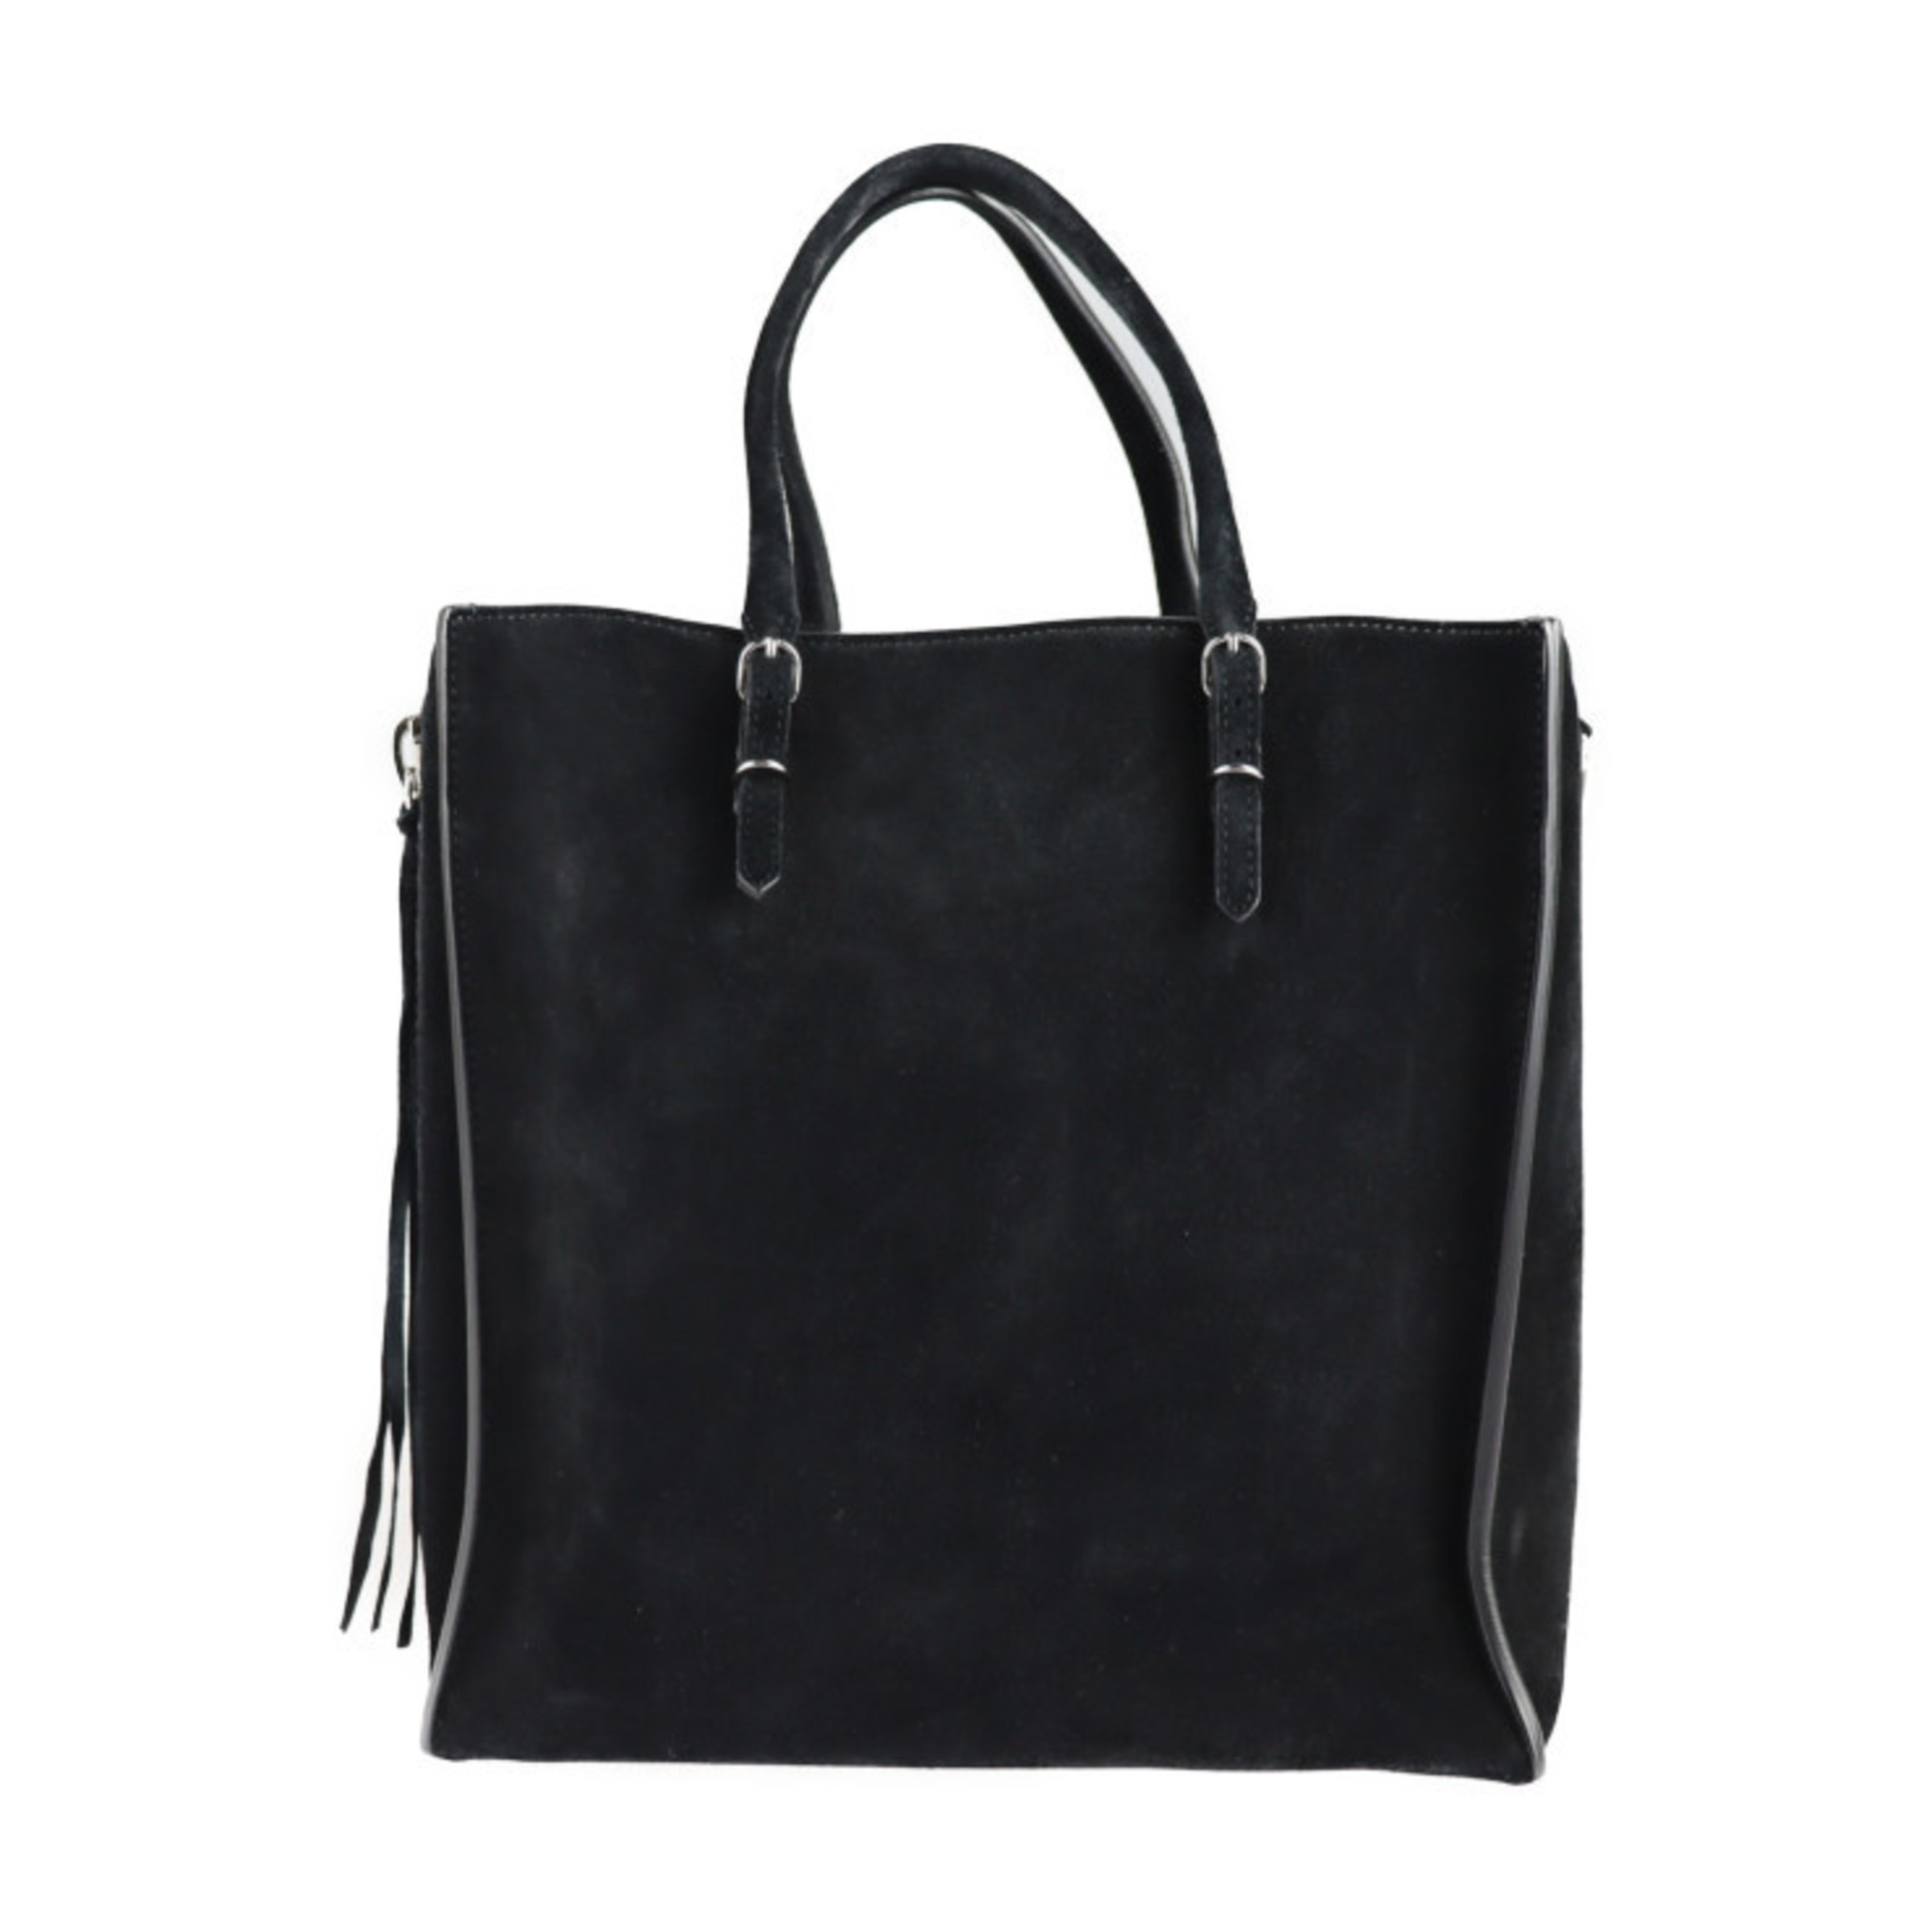 BALENCIAGA Balenciaga paper A5 tote bag 357330 suede black handbag